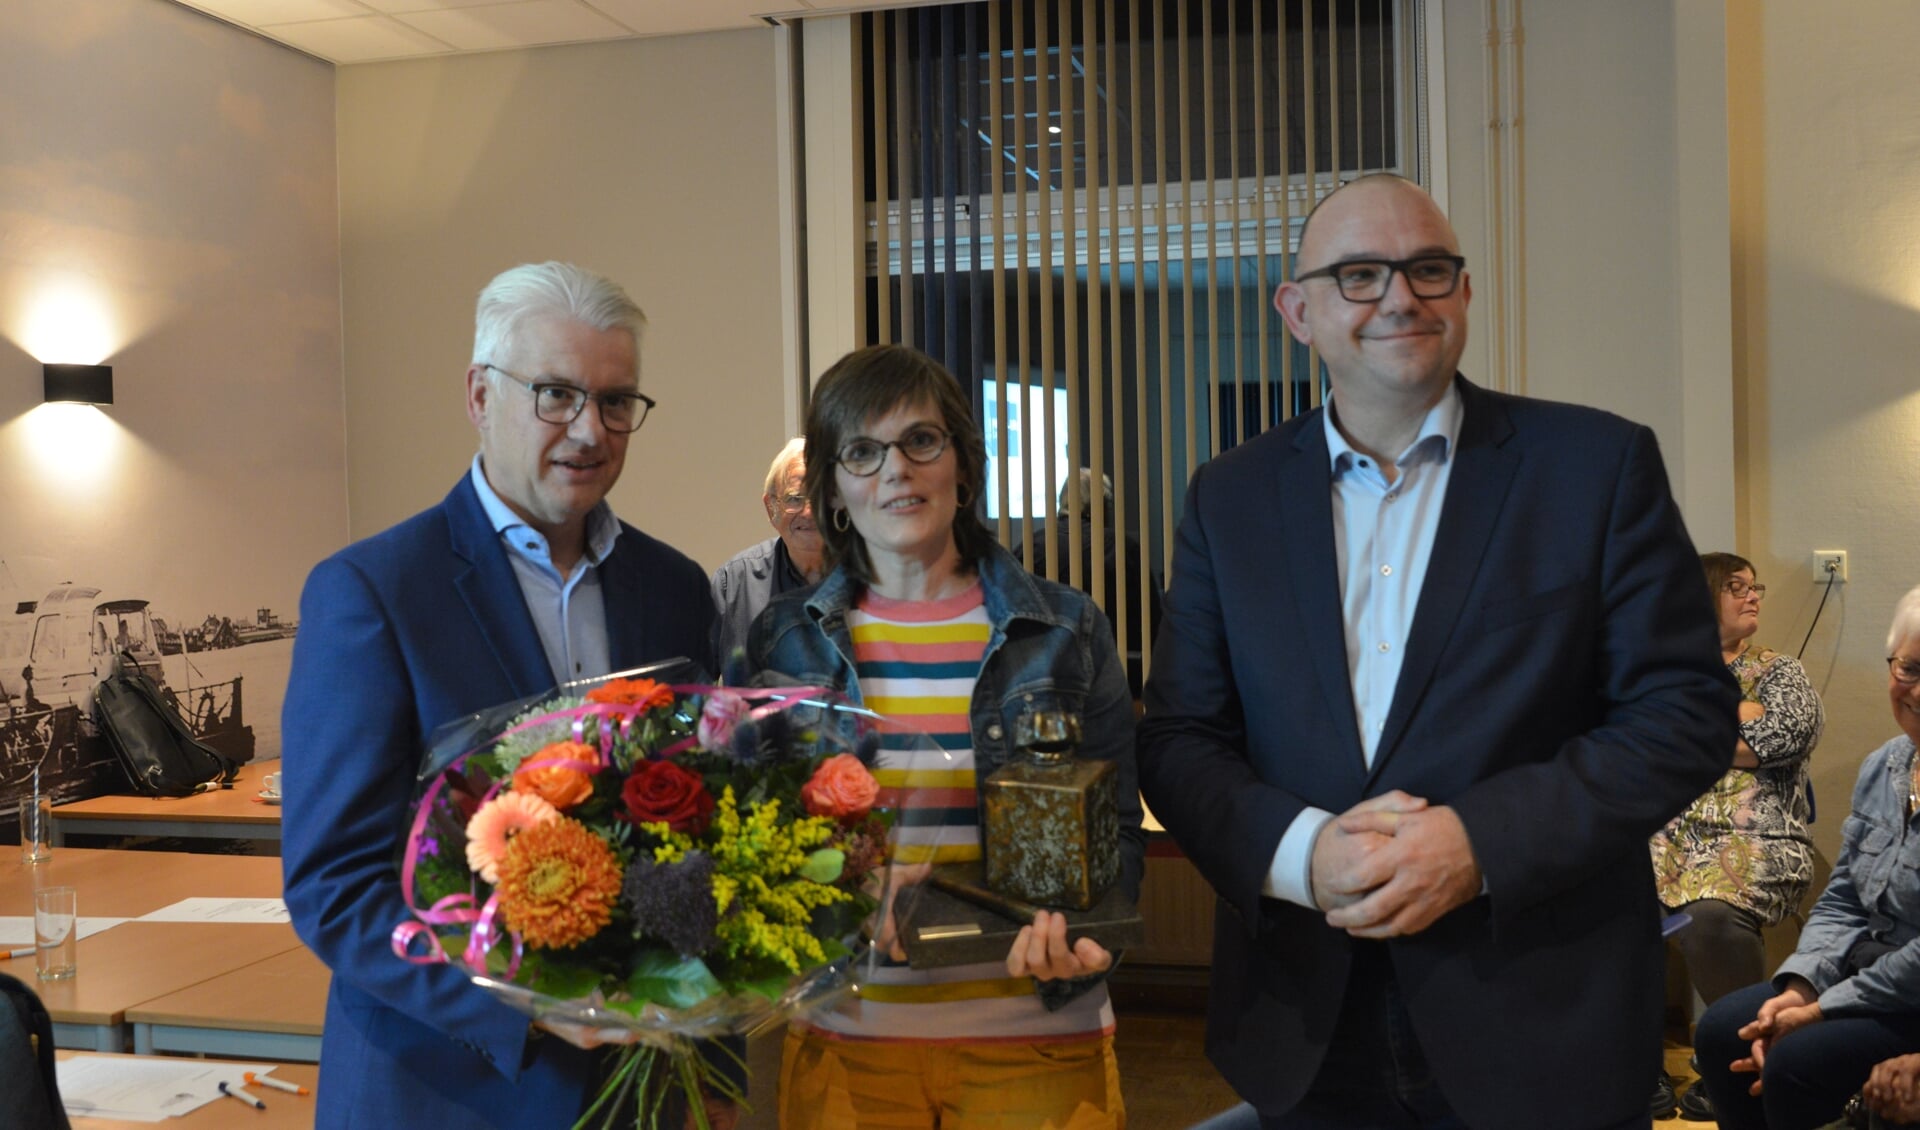 Louise van Gorsel kreeg de wisseltrofee uit handen van wethouder Frank Hommel. Rechts staat presentator Jaap Hage.